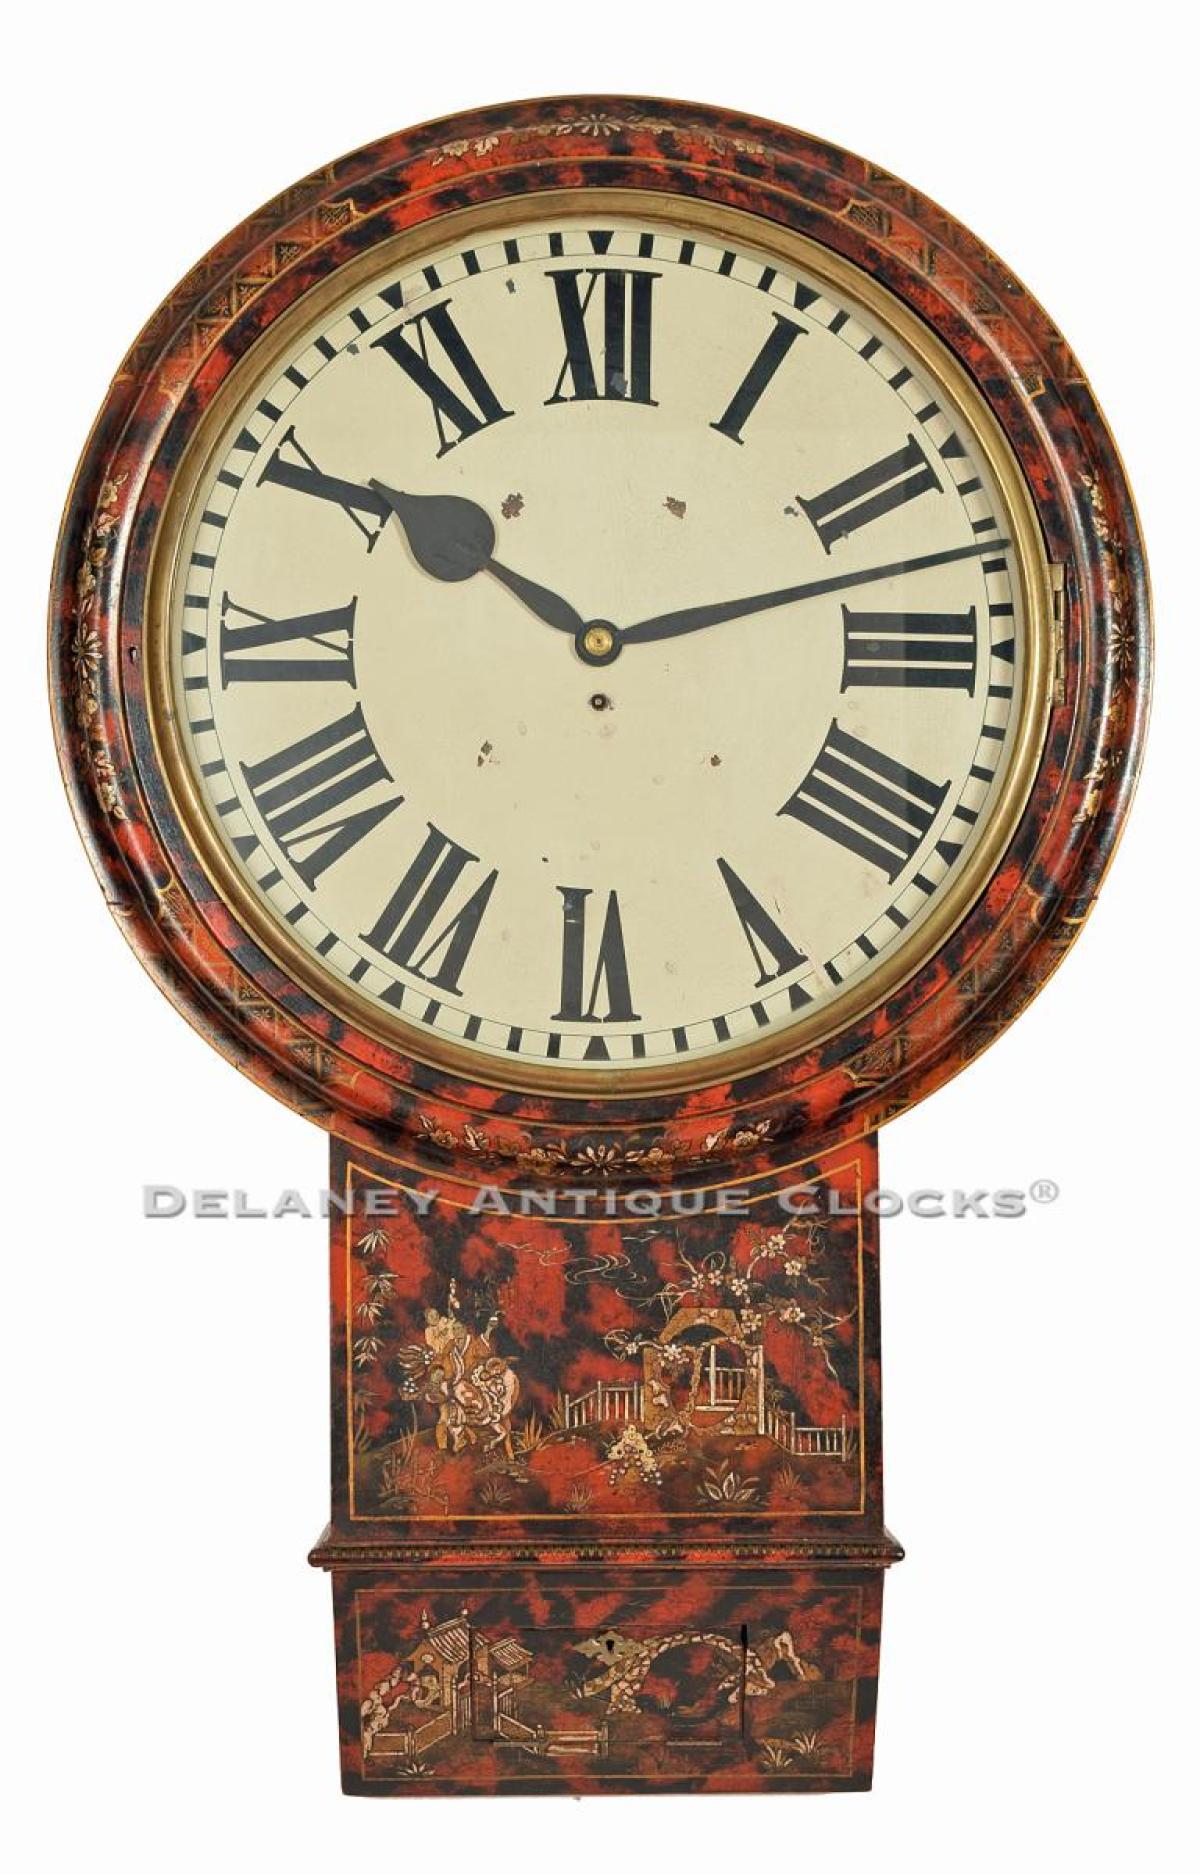 Act of Parliament Dial or Tavern clock. UK origin. 222032. Delaney Antique Clocks.